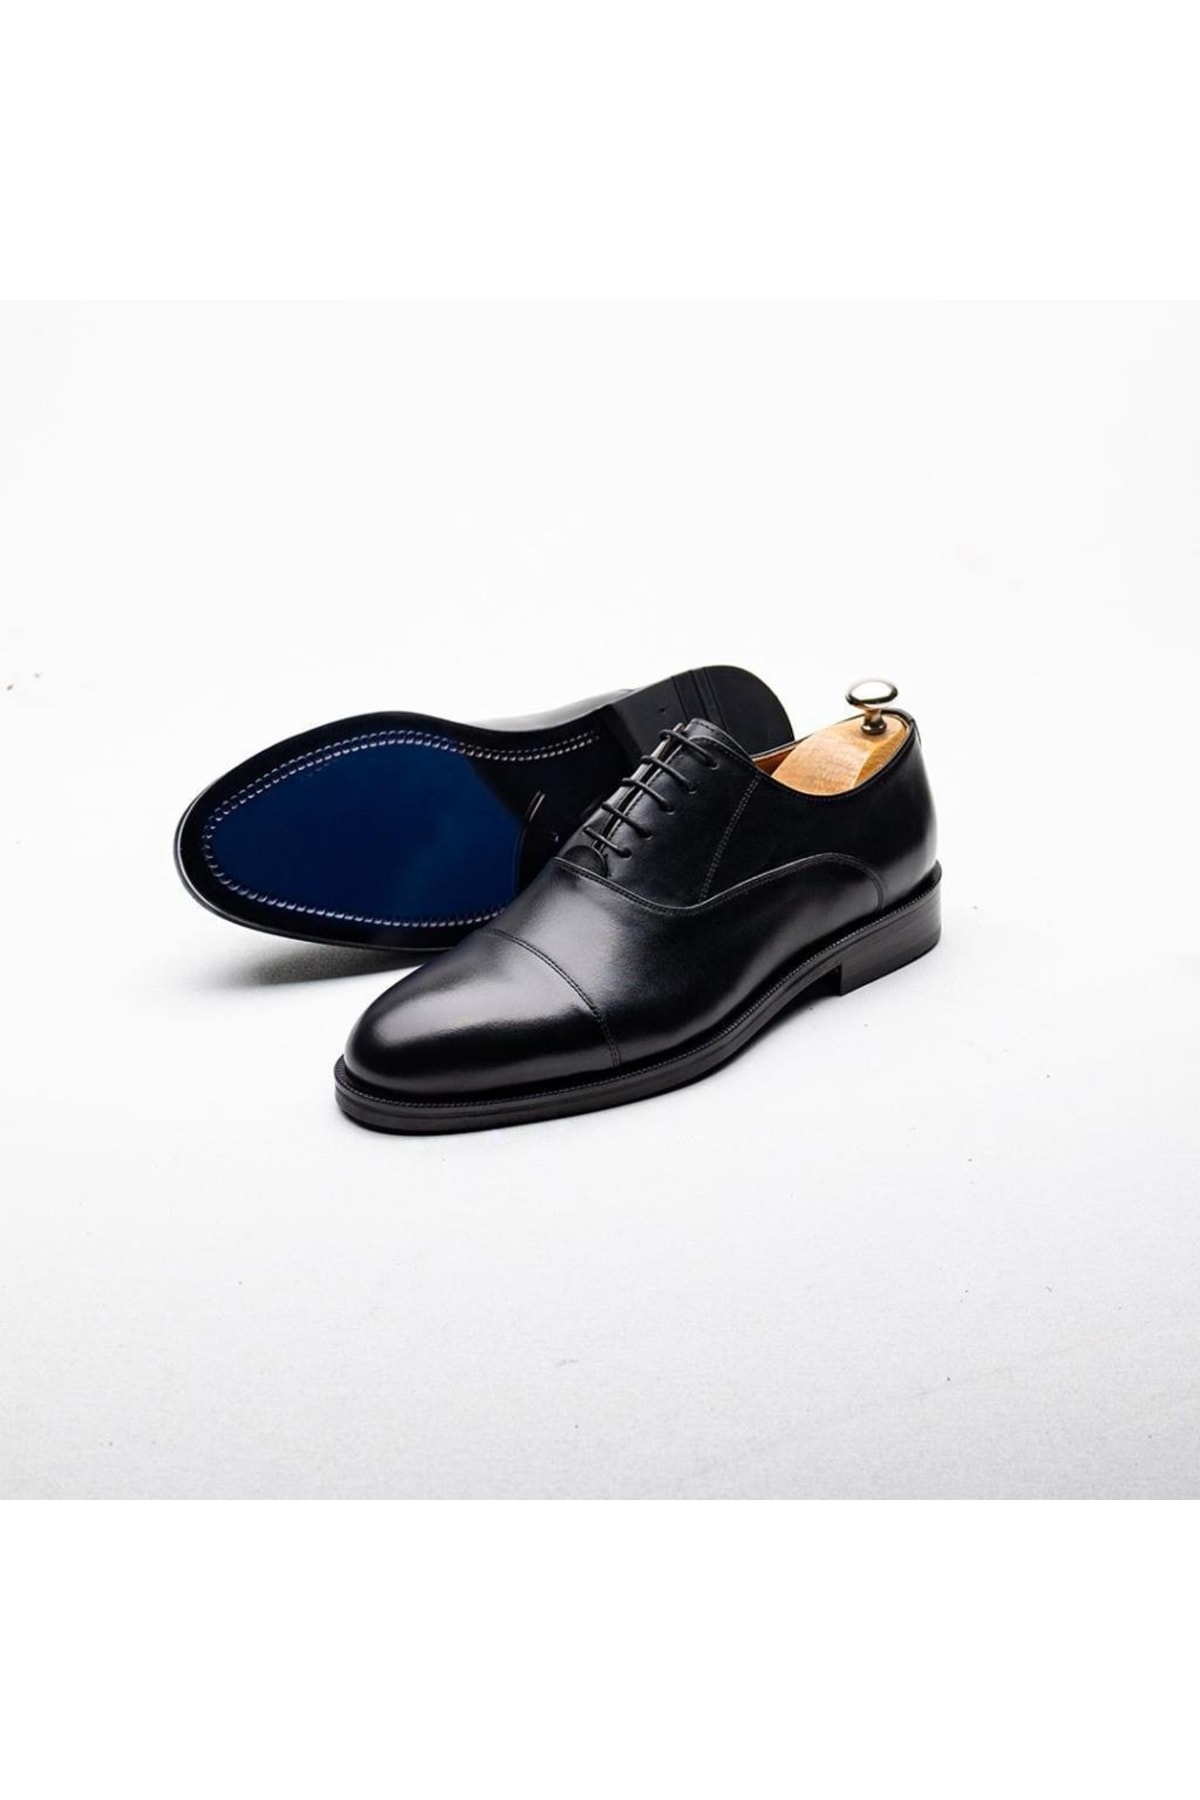 İBAY 2030 Gazzelle Siyah Erkek Deri Günlük Klasik Ayakkabı